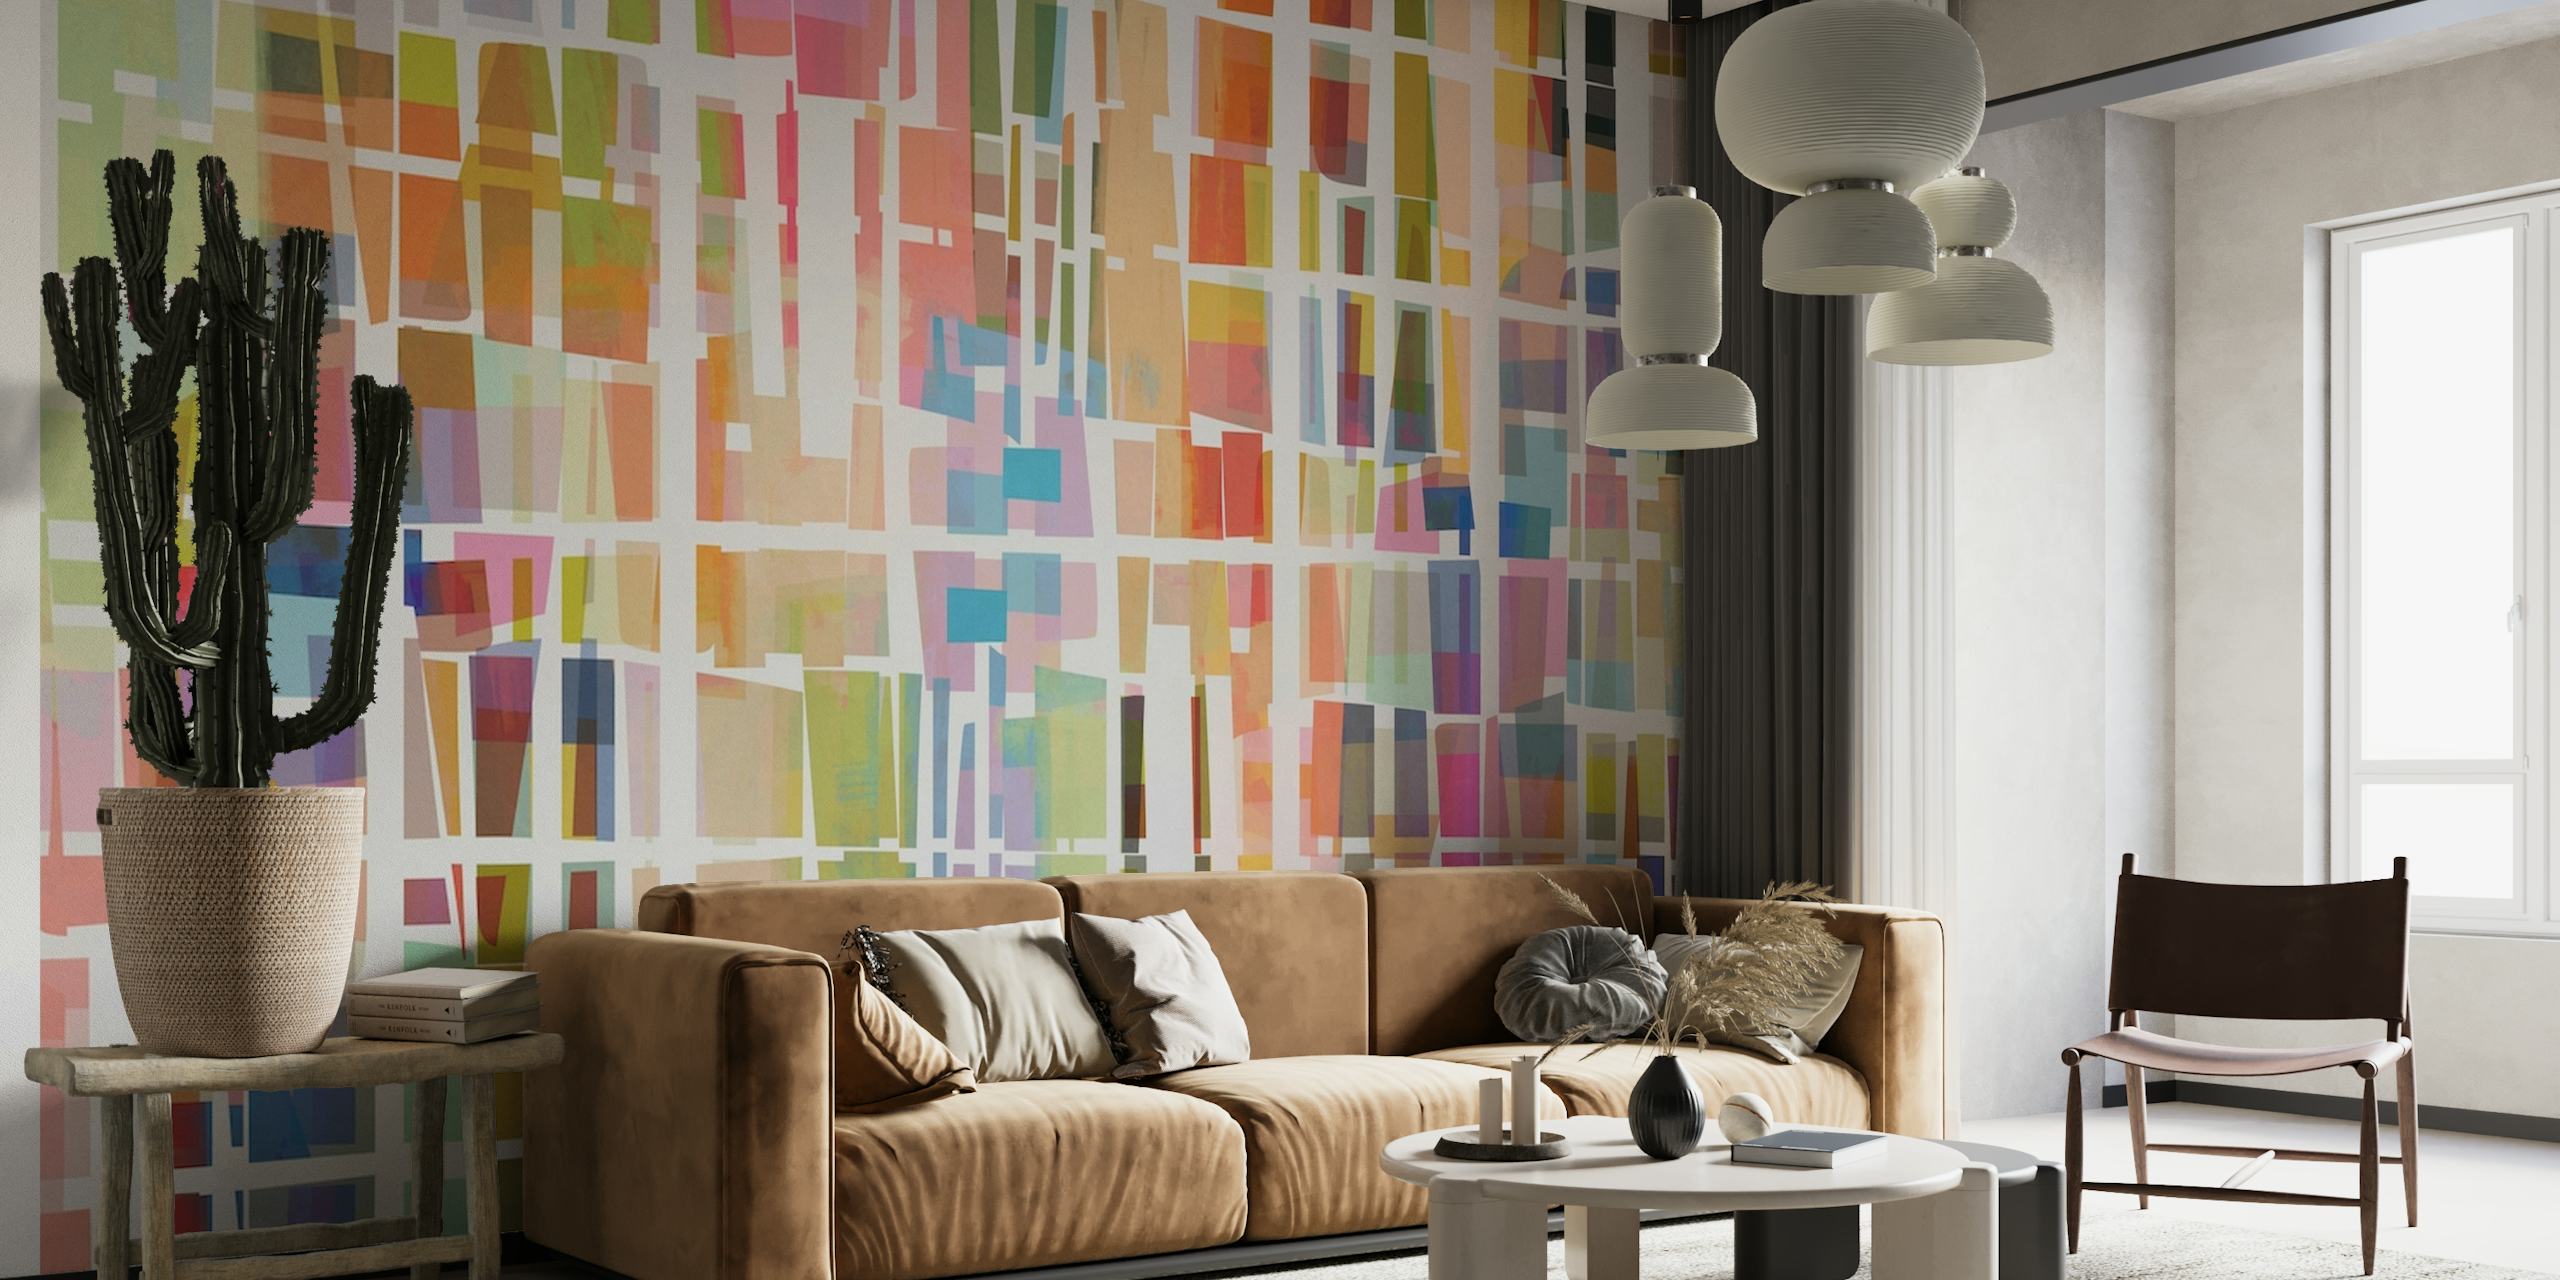 Landscape in Colored Blocks wallpaper